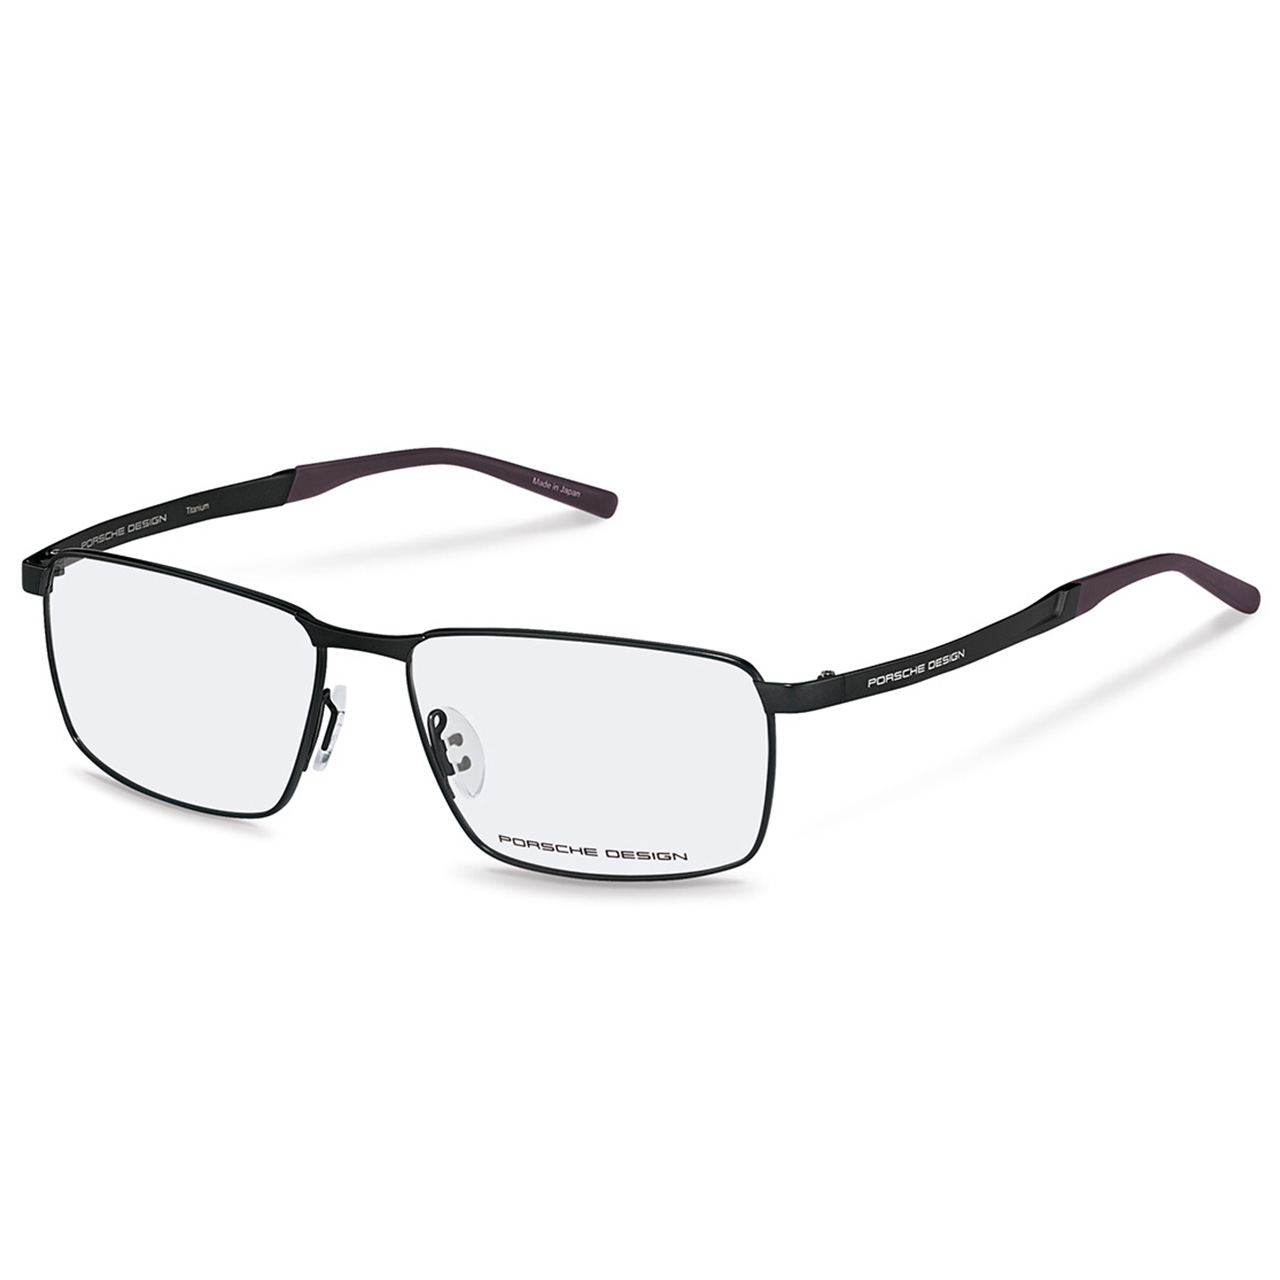 Korrektionsbrille P´8337 - Titanbrillen - Hochwertig & besonders leicht ...